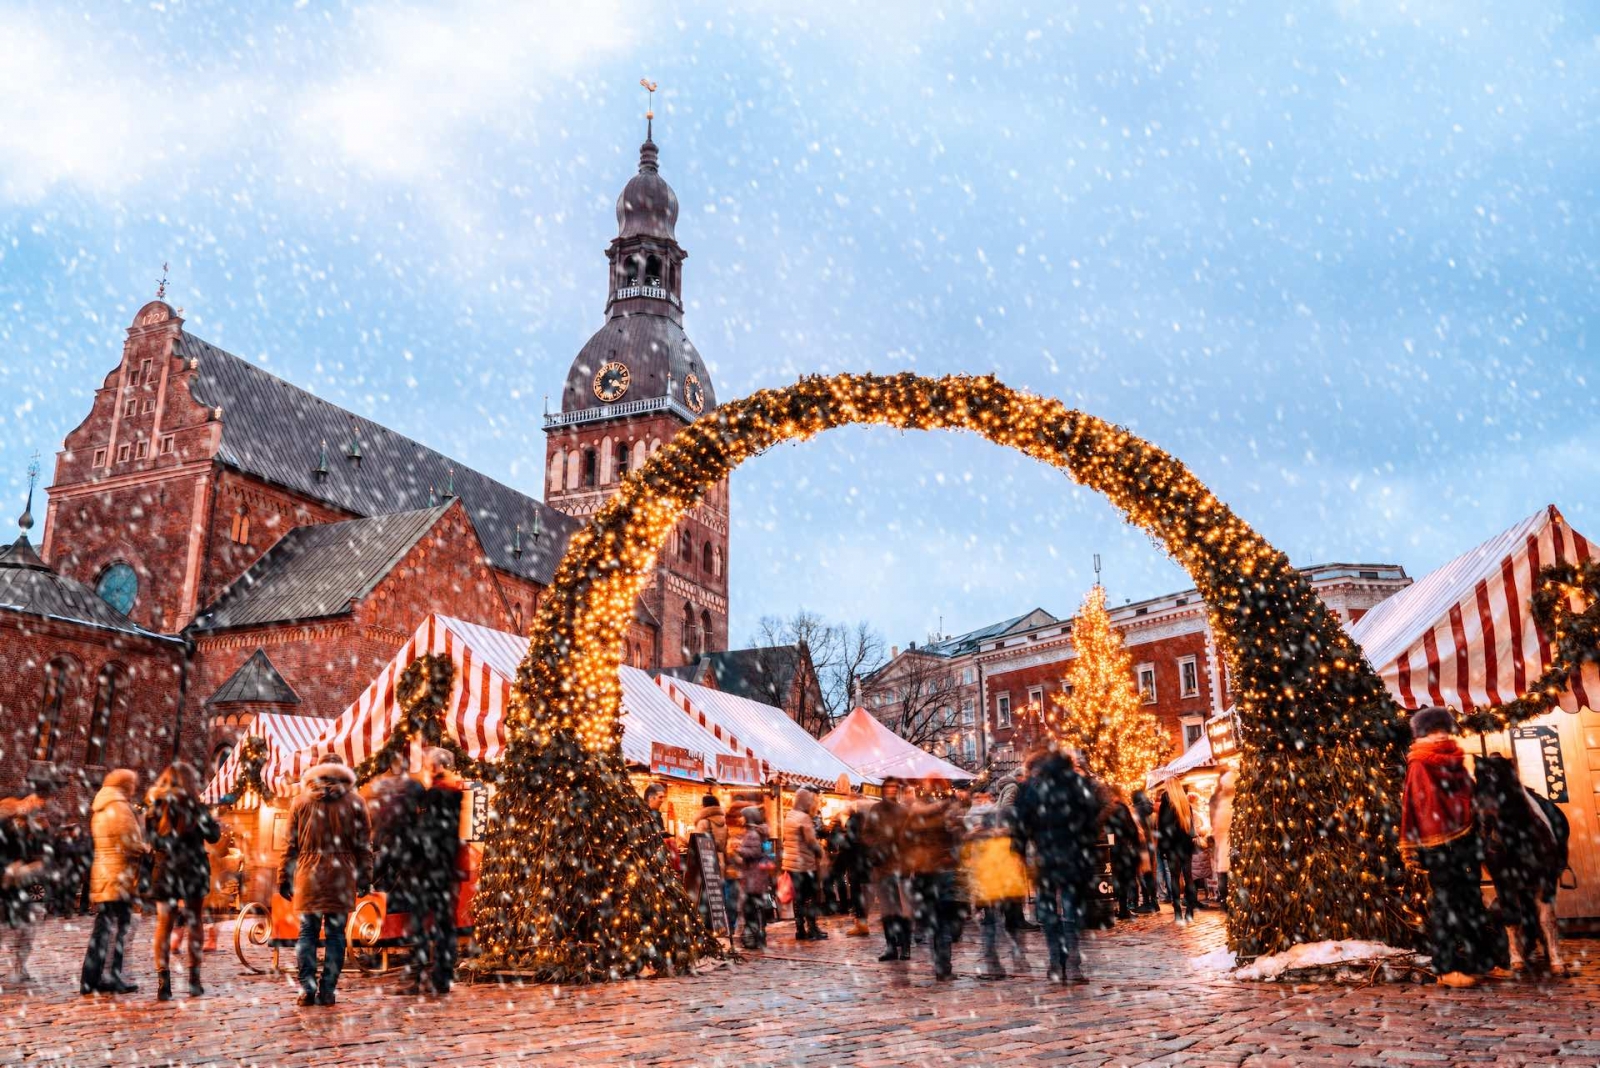 Marché de Noël et l'arbre de Noël principal situé sur la place du Dôme dans le vieux Riga, Lettonie